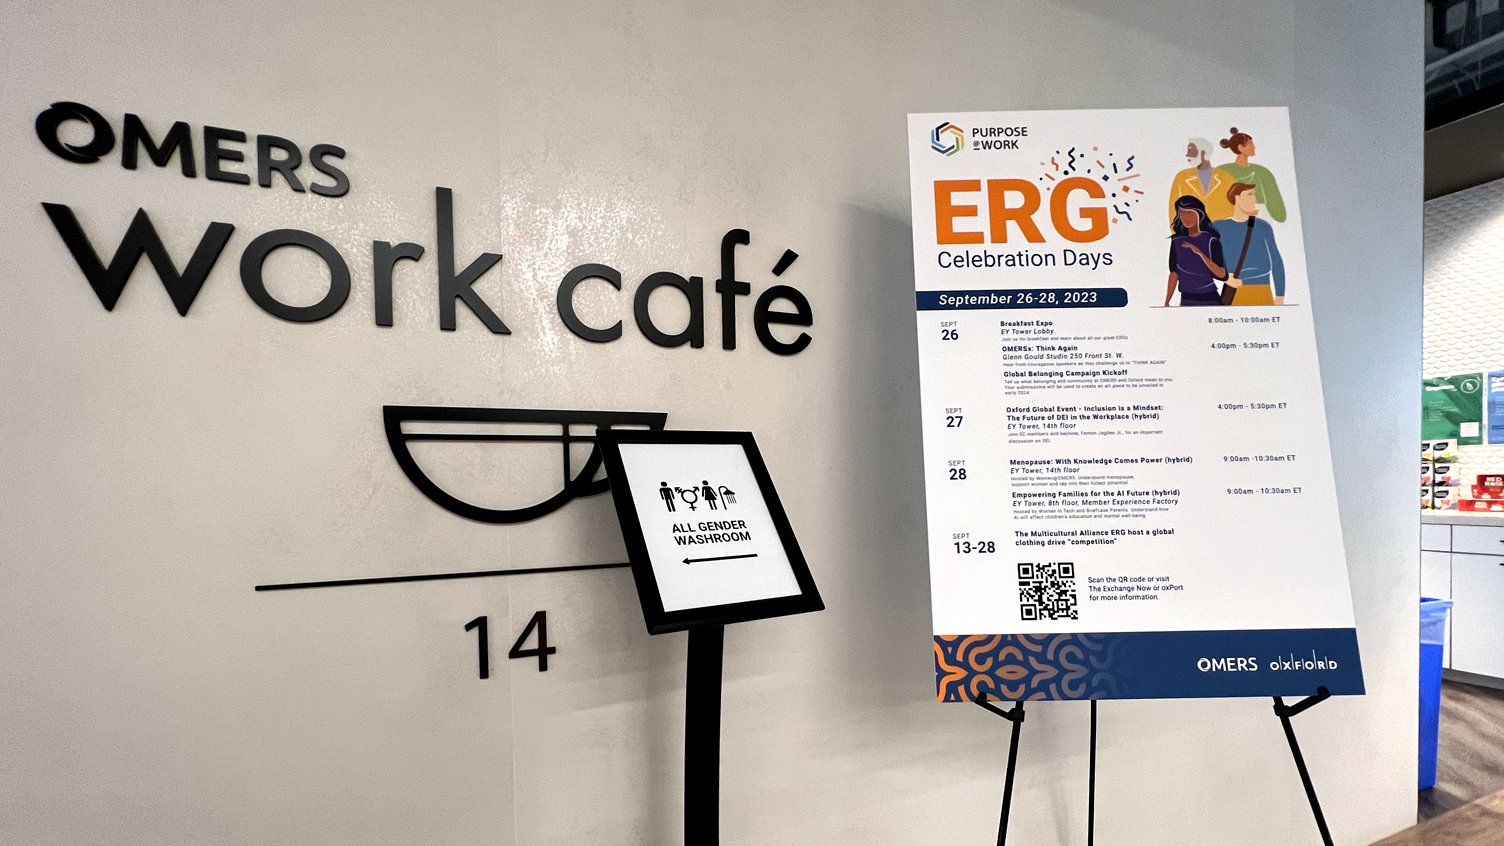 Cafe signage & ERG Day signage